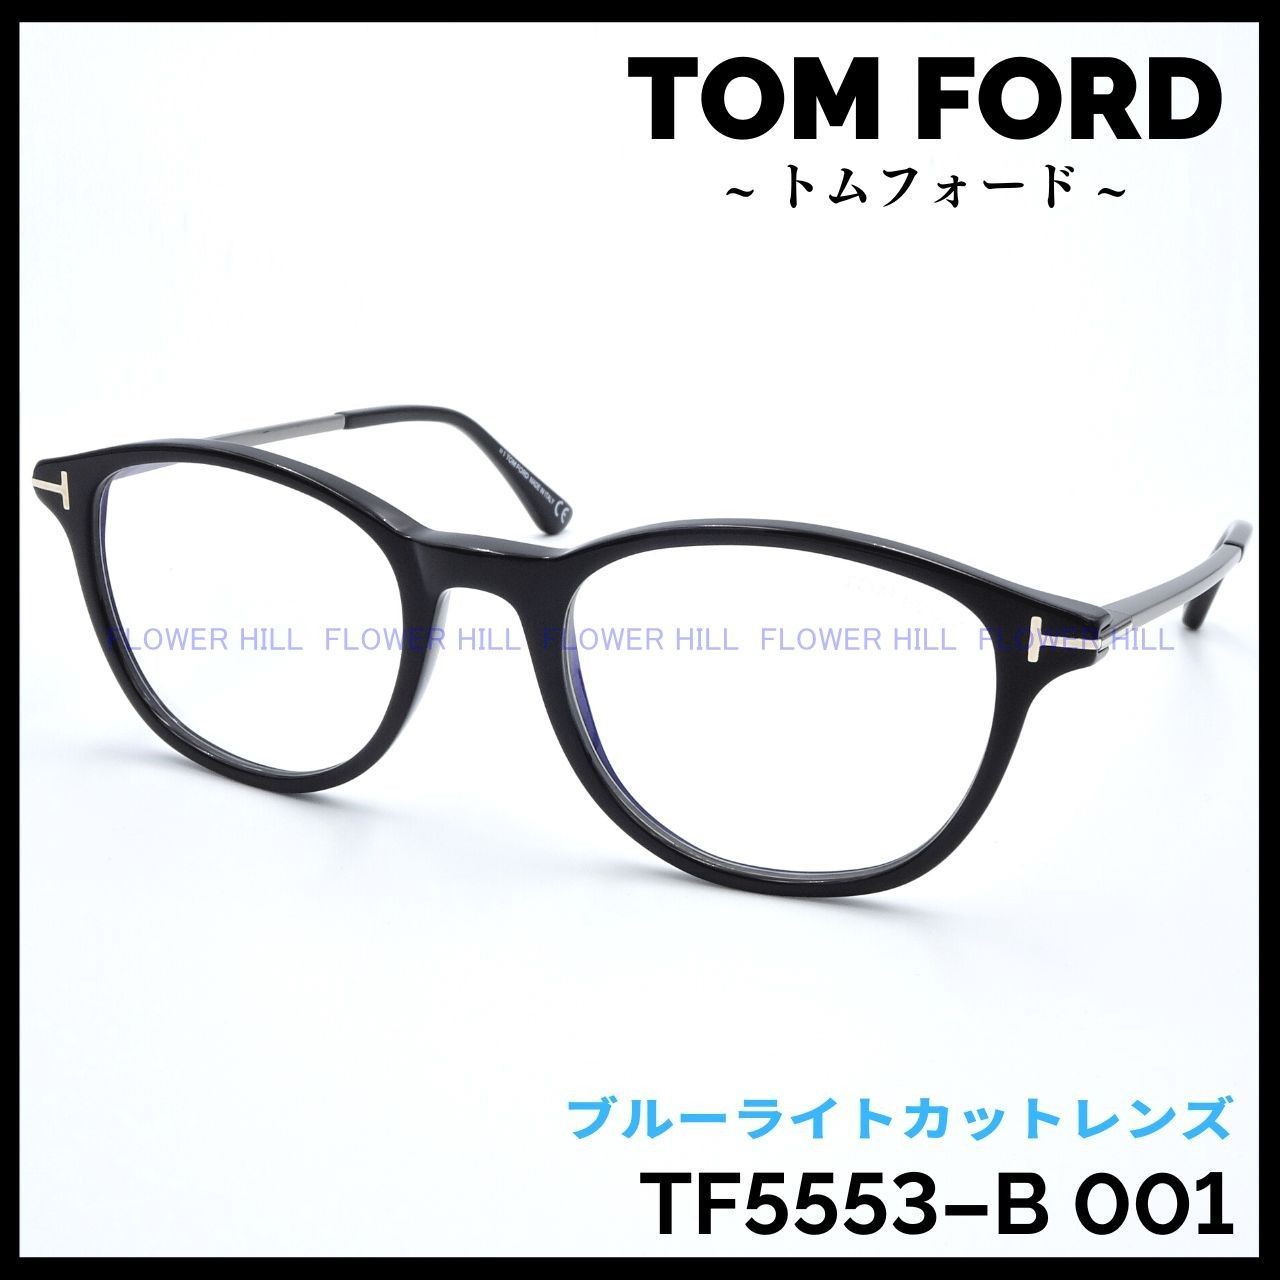 FlowerHill新品 トムフォード メガネフレーム ボストン ブラック TF5553-B 001